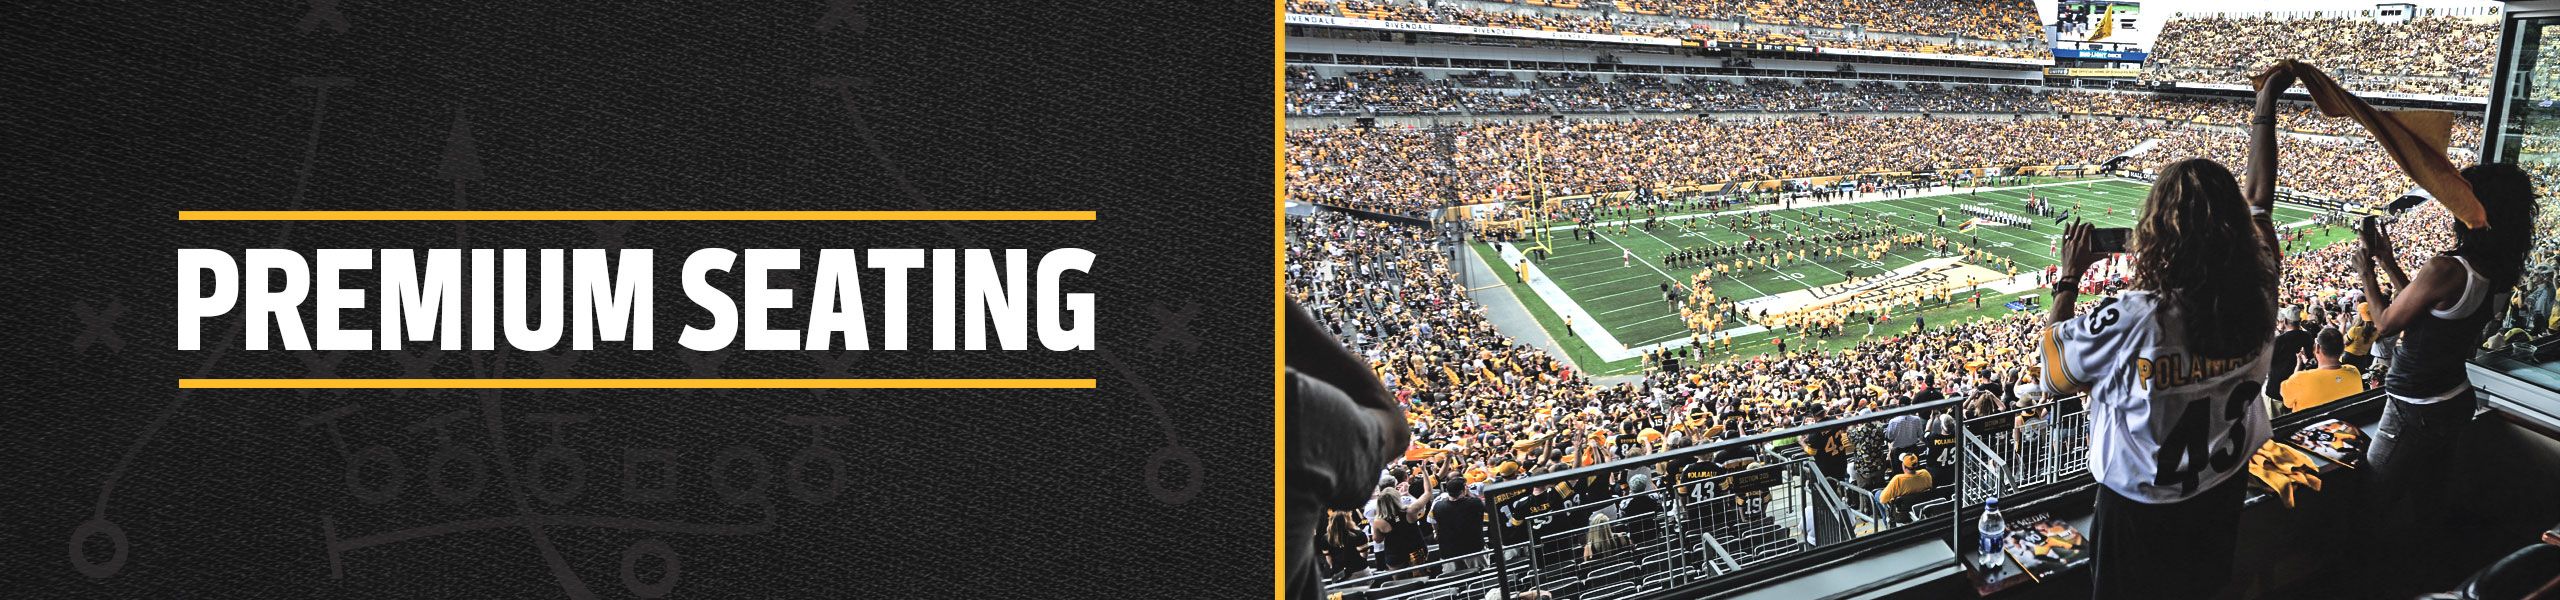 Steelers Premium Seating Pittsburgh Steelers